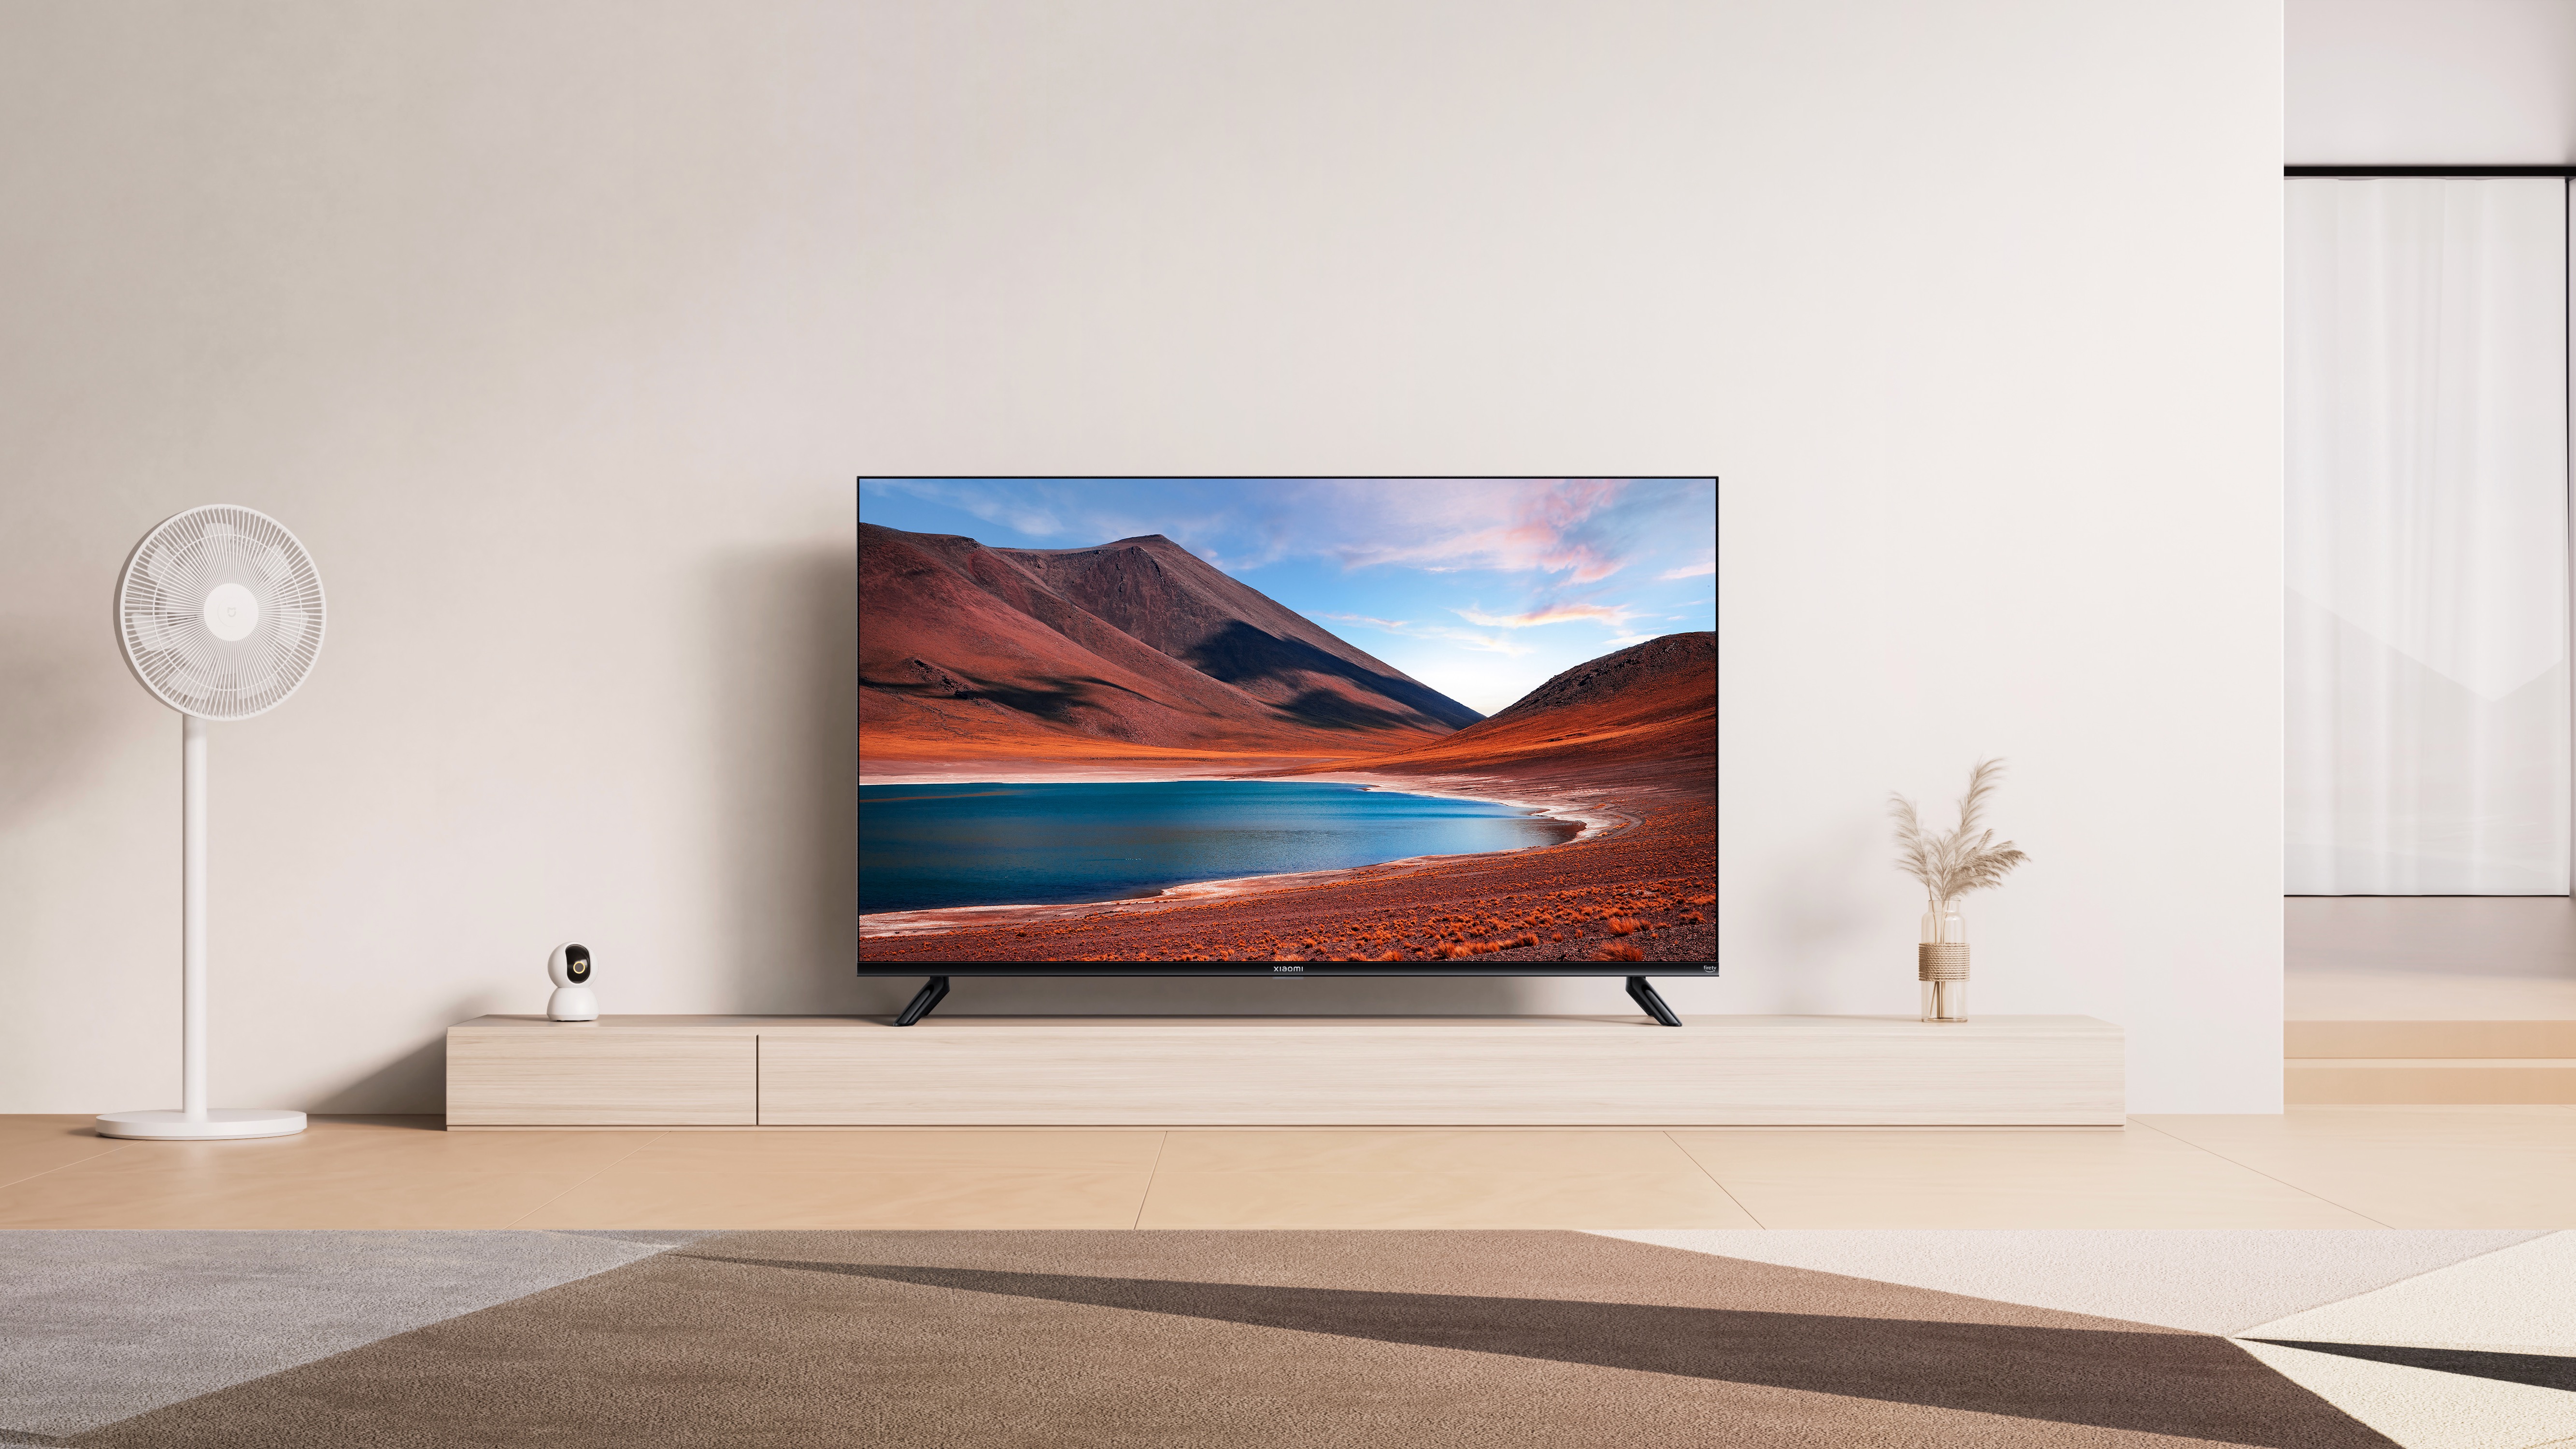 Телевизор xiaomi купить в спб. Телевизор Xiaomi mi TV 4s 70. Xiaomi mi TV 4s 55 t2 2019 led, HDR. Телевизор Xiaomi TV q2 50".